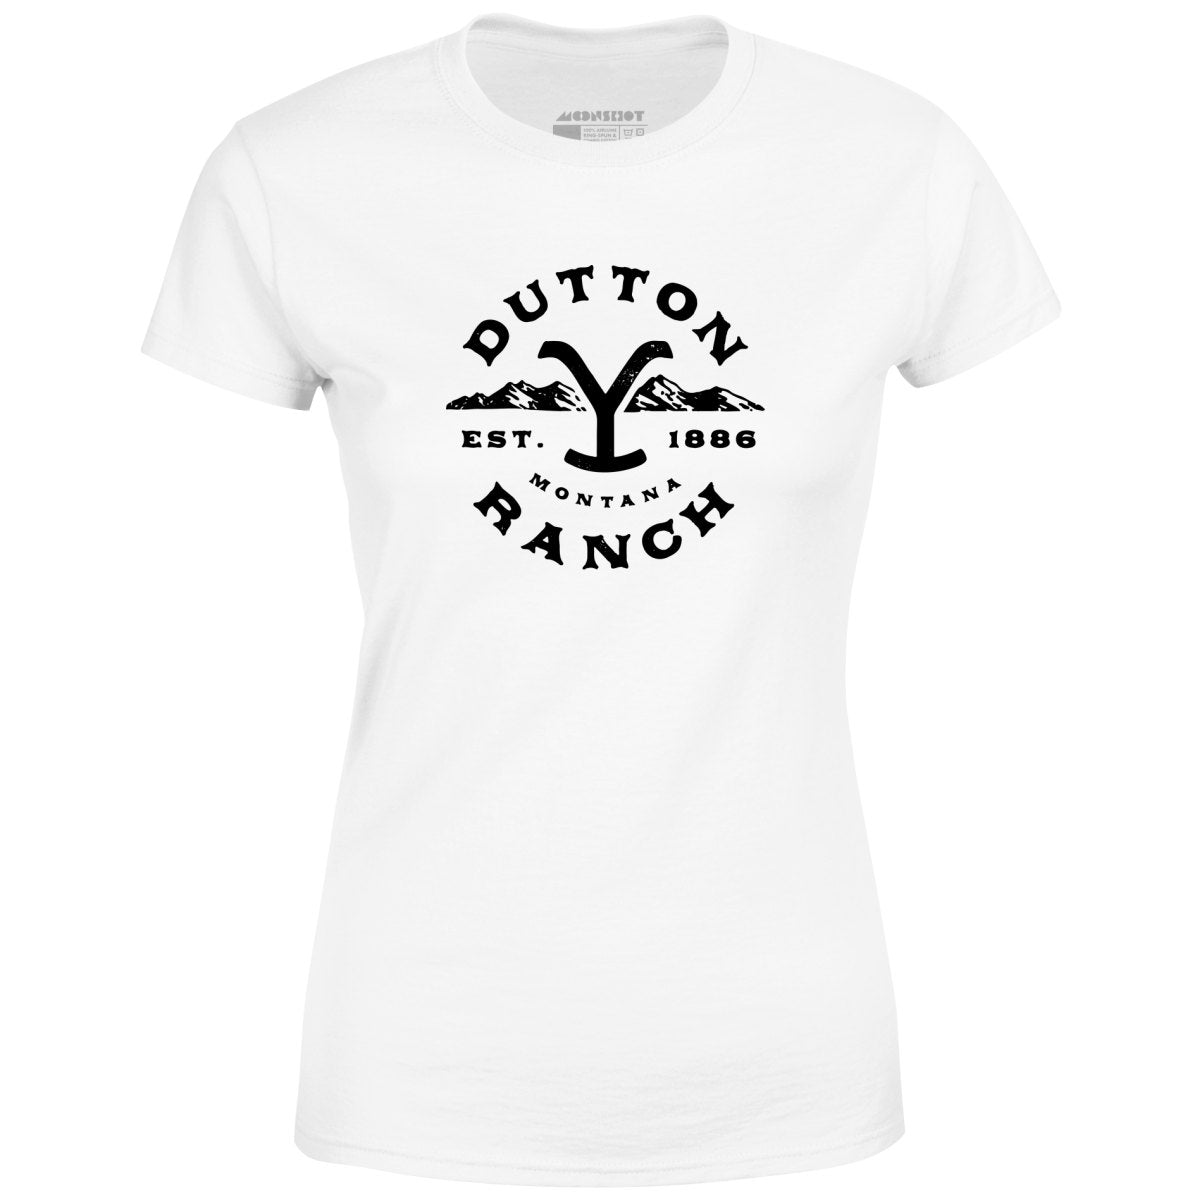 Dutton Ranch - Women's T-Shirt